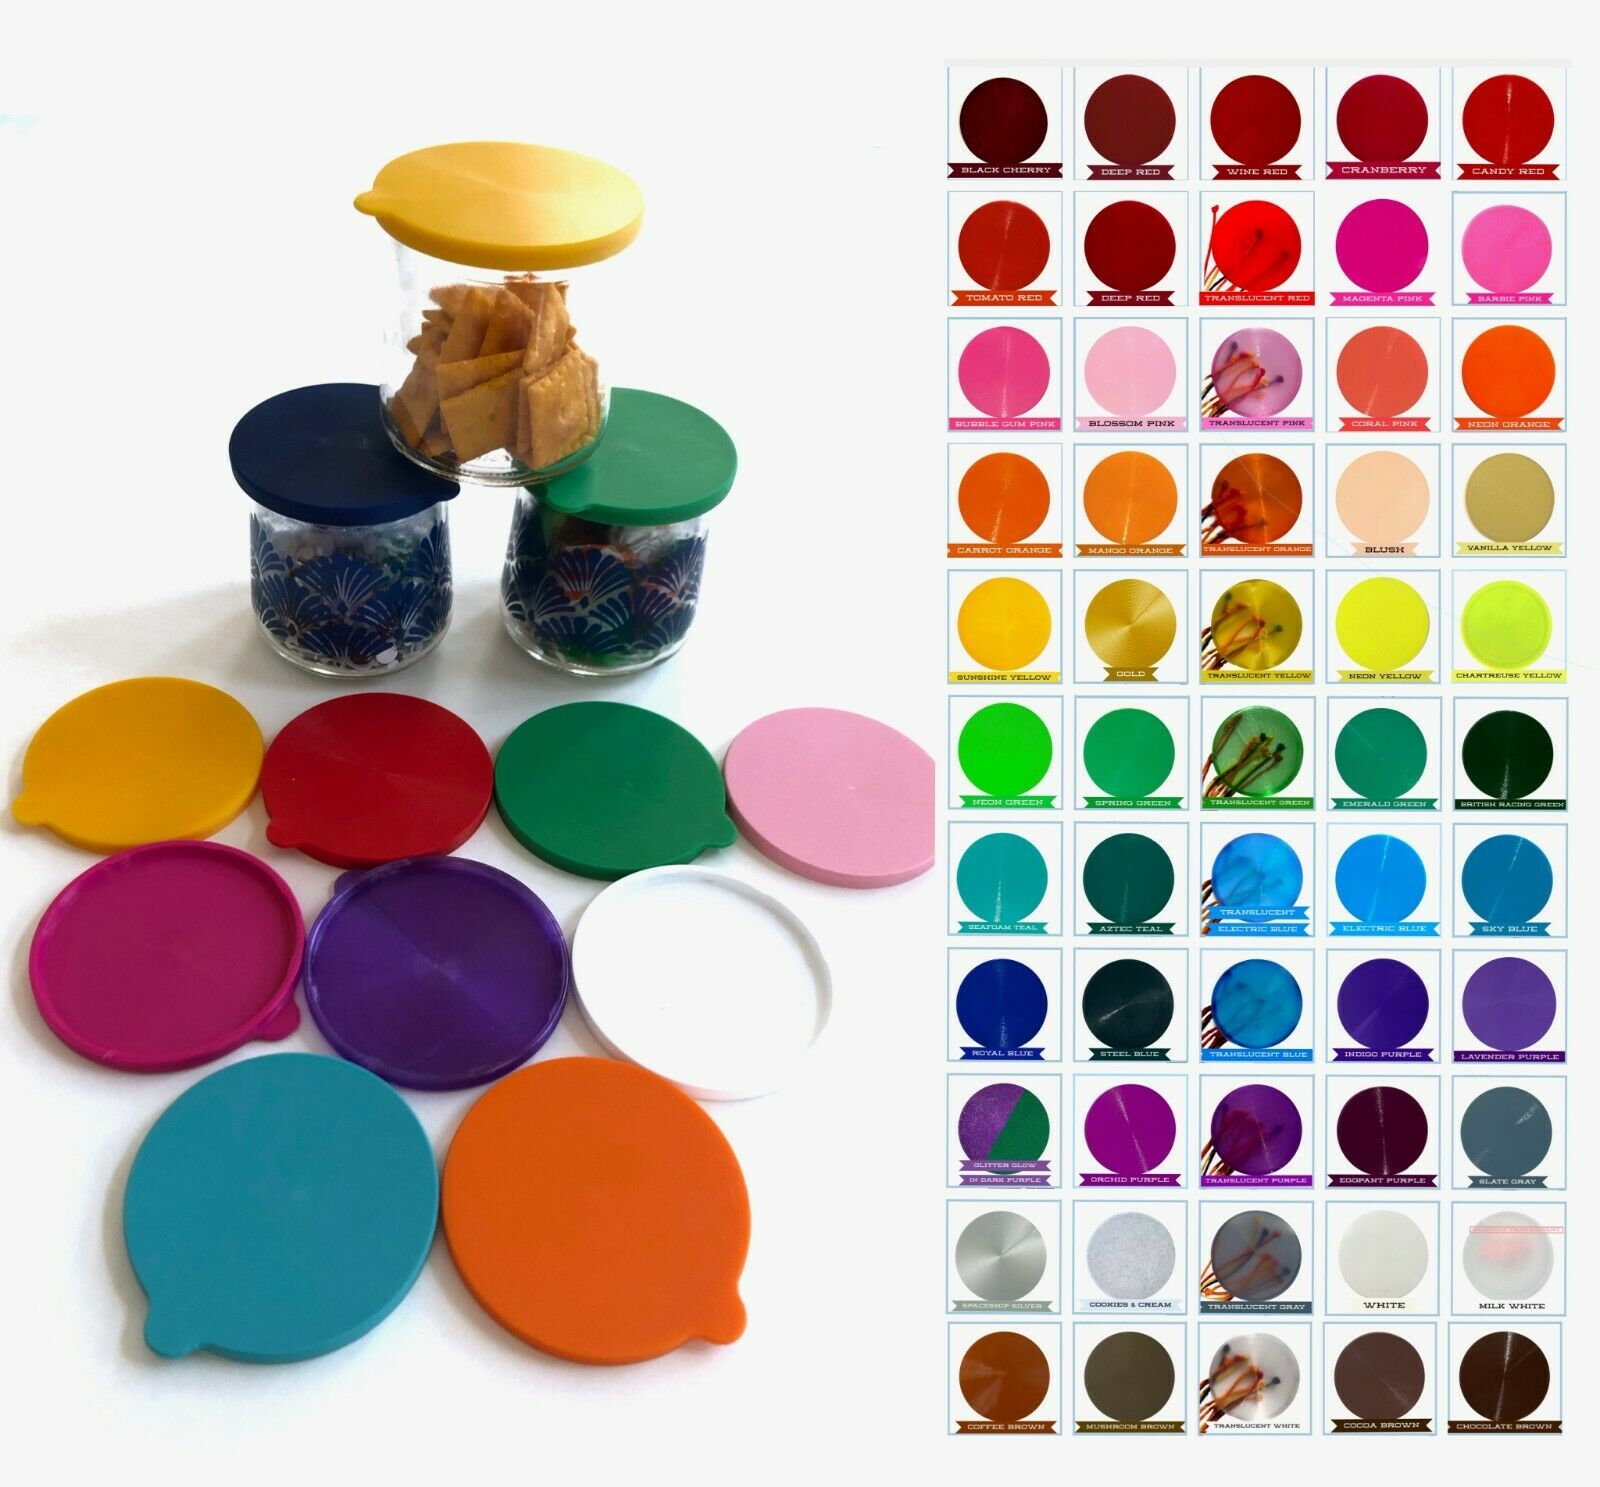 OUI Yogurt jar lids. Pick Your Colors - ❤️  75 Colors